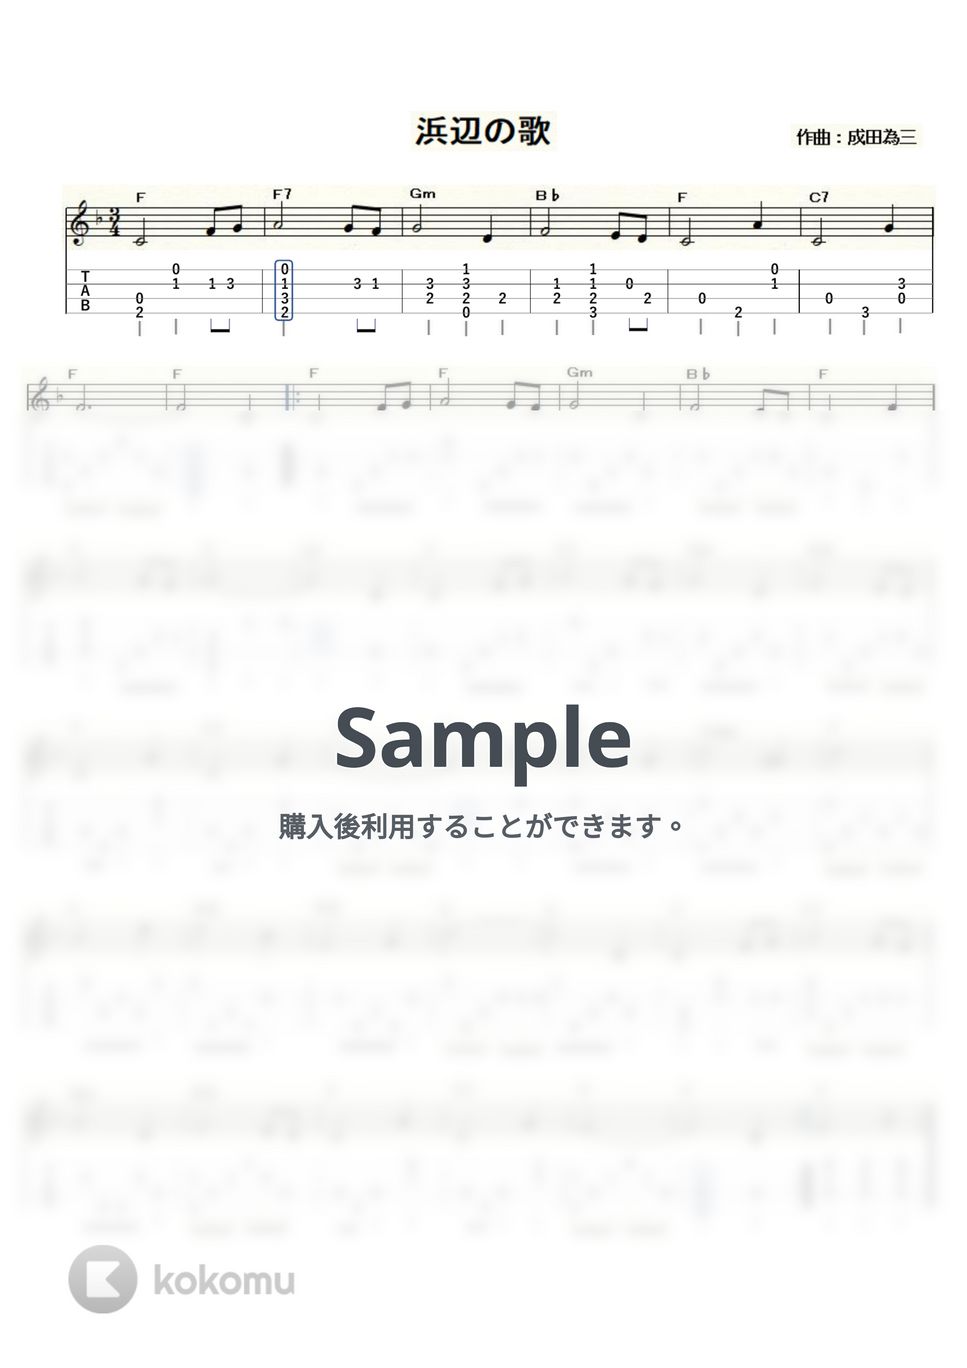 浜辺の歌 (ｳｸﾚﾚｿﾛ / Low-G / 初級) by ukulelepapa